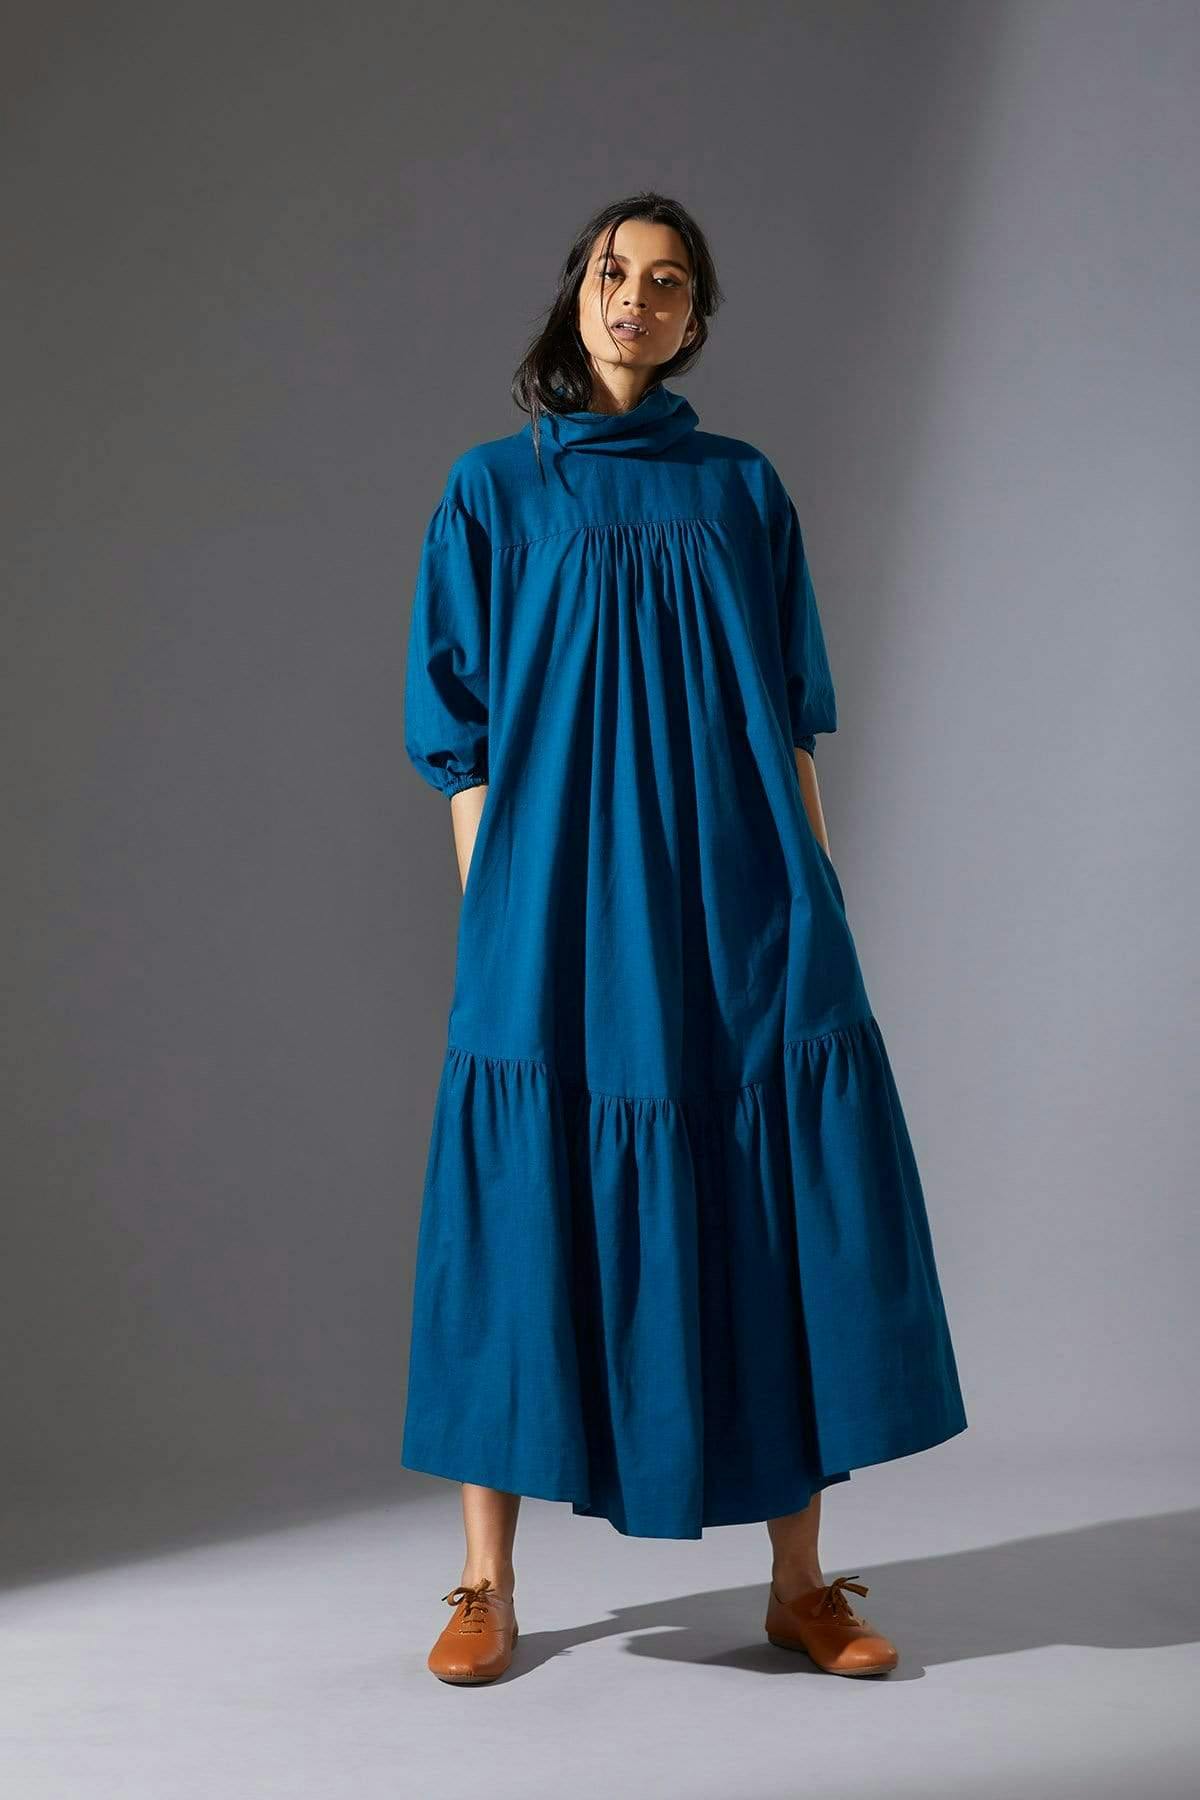 Mati New Praci Blue Dress, a product by Style Mati